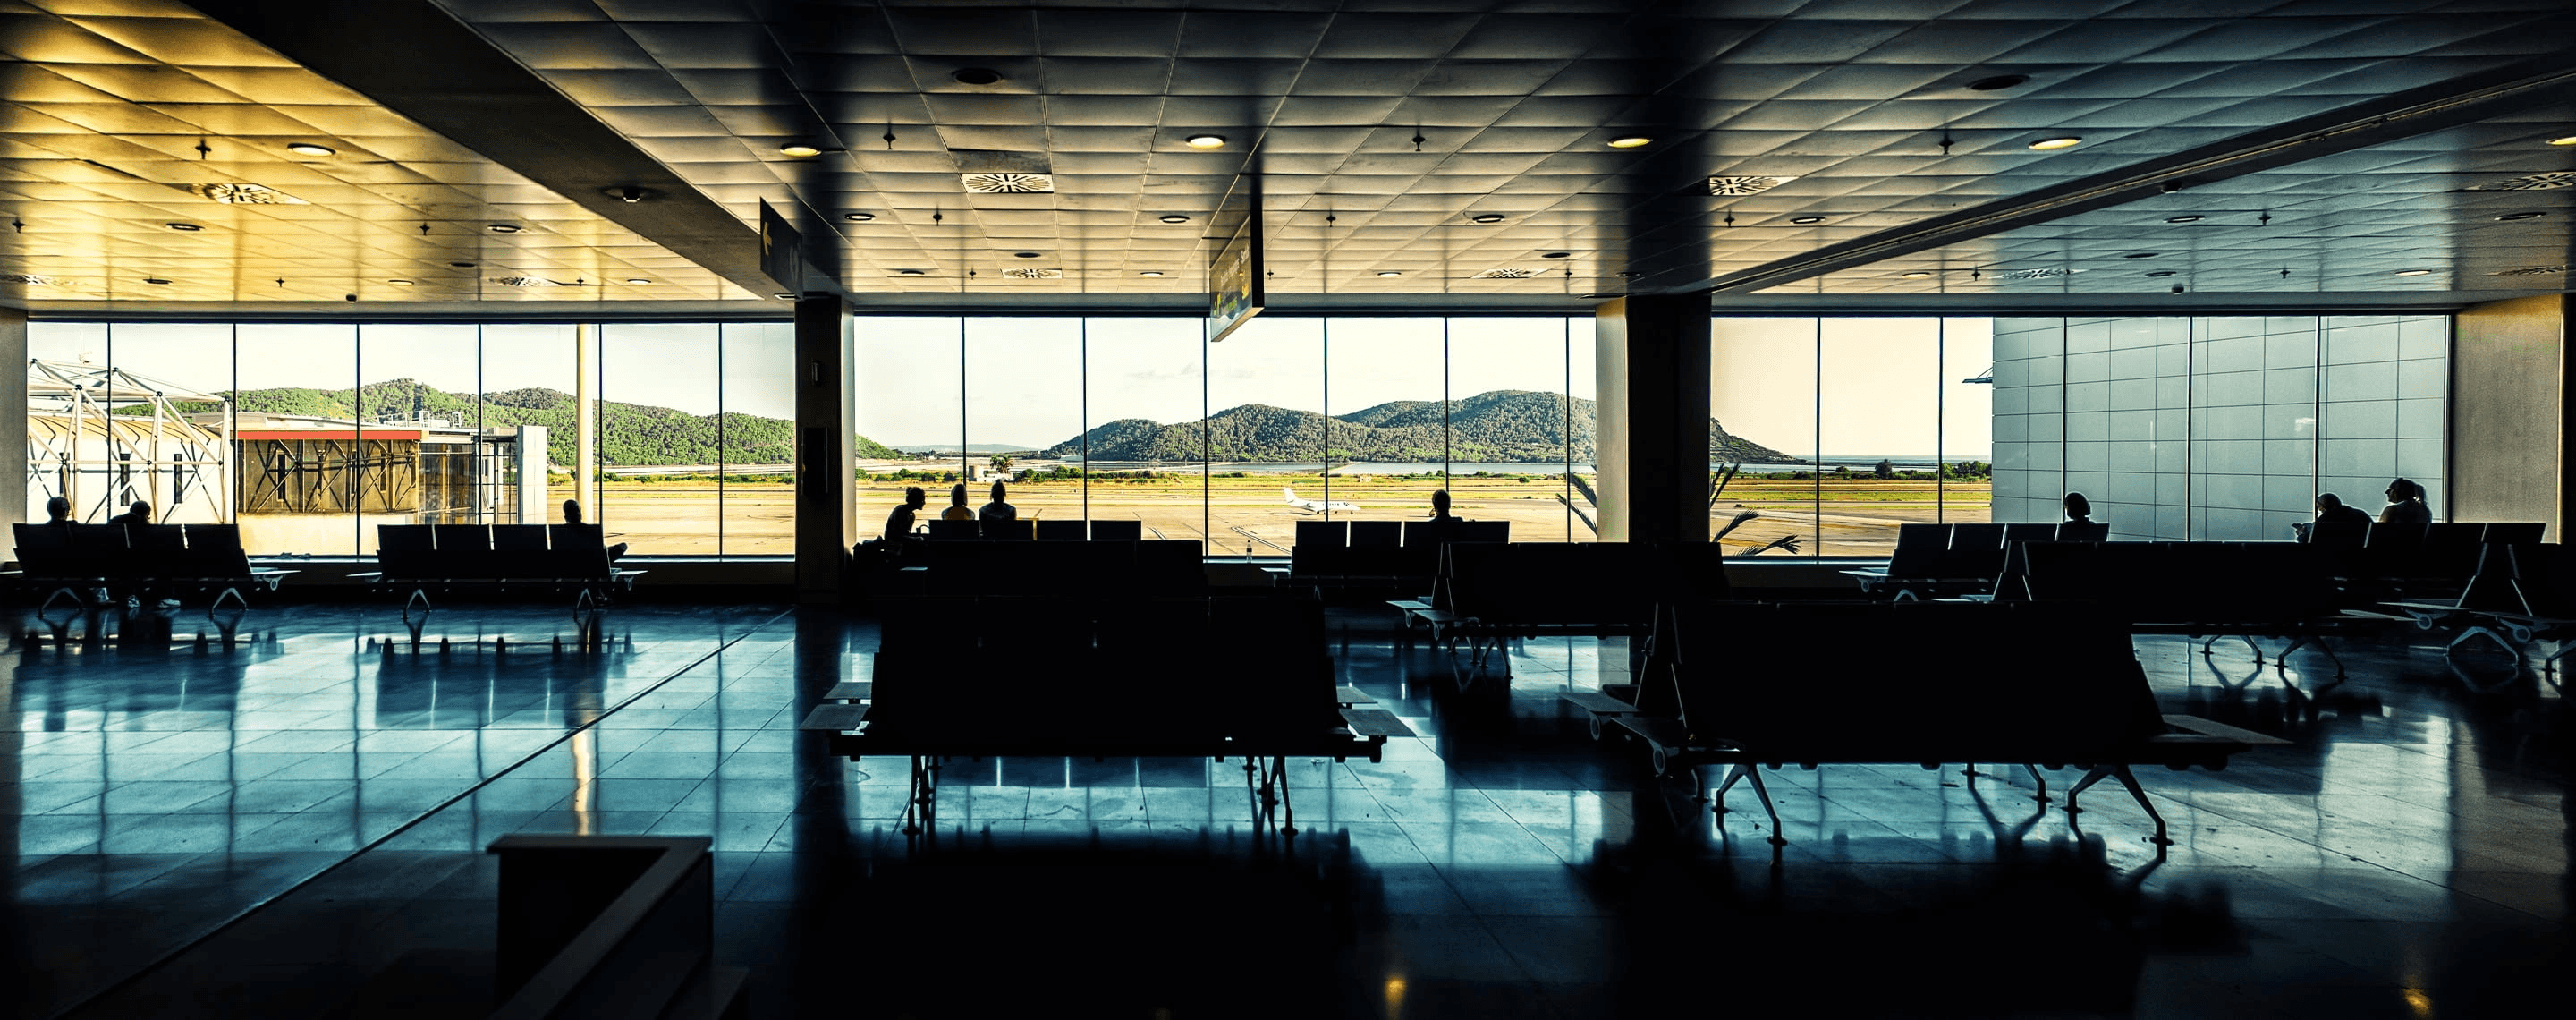 Wartebereich am Flughafen Ibiza mit Panoramafenster